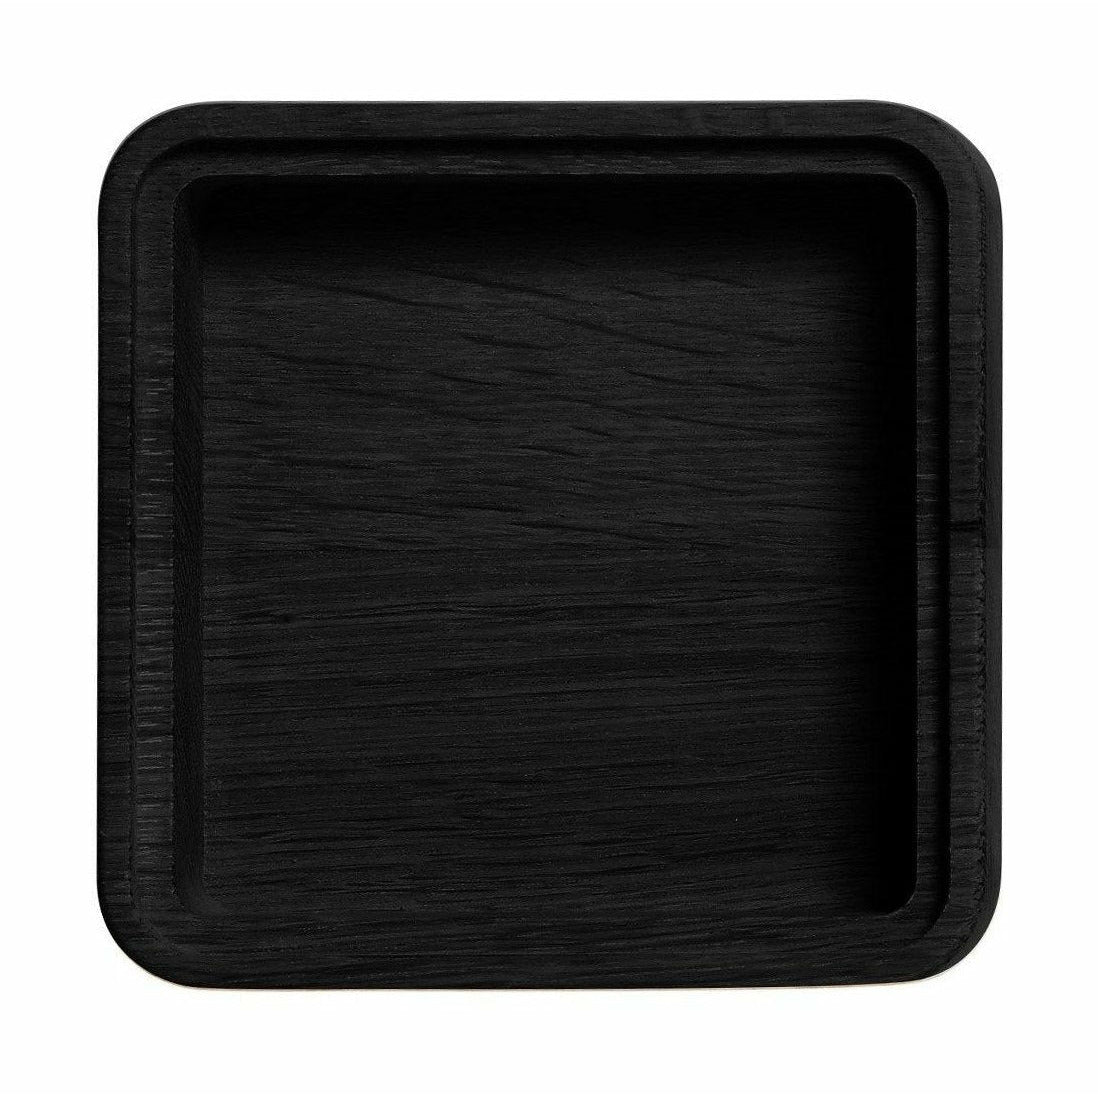 Les meubles Andersen créent une boîte en noir, 1 compartiment, 12x12cm